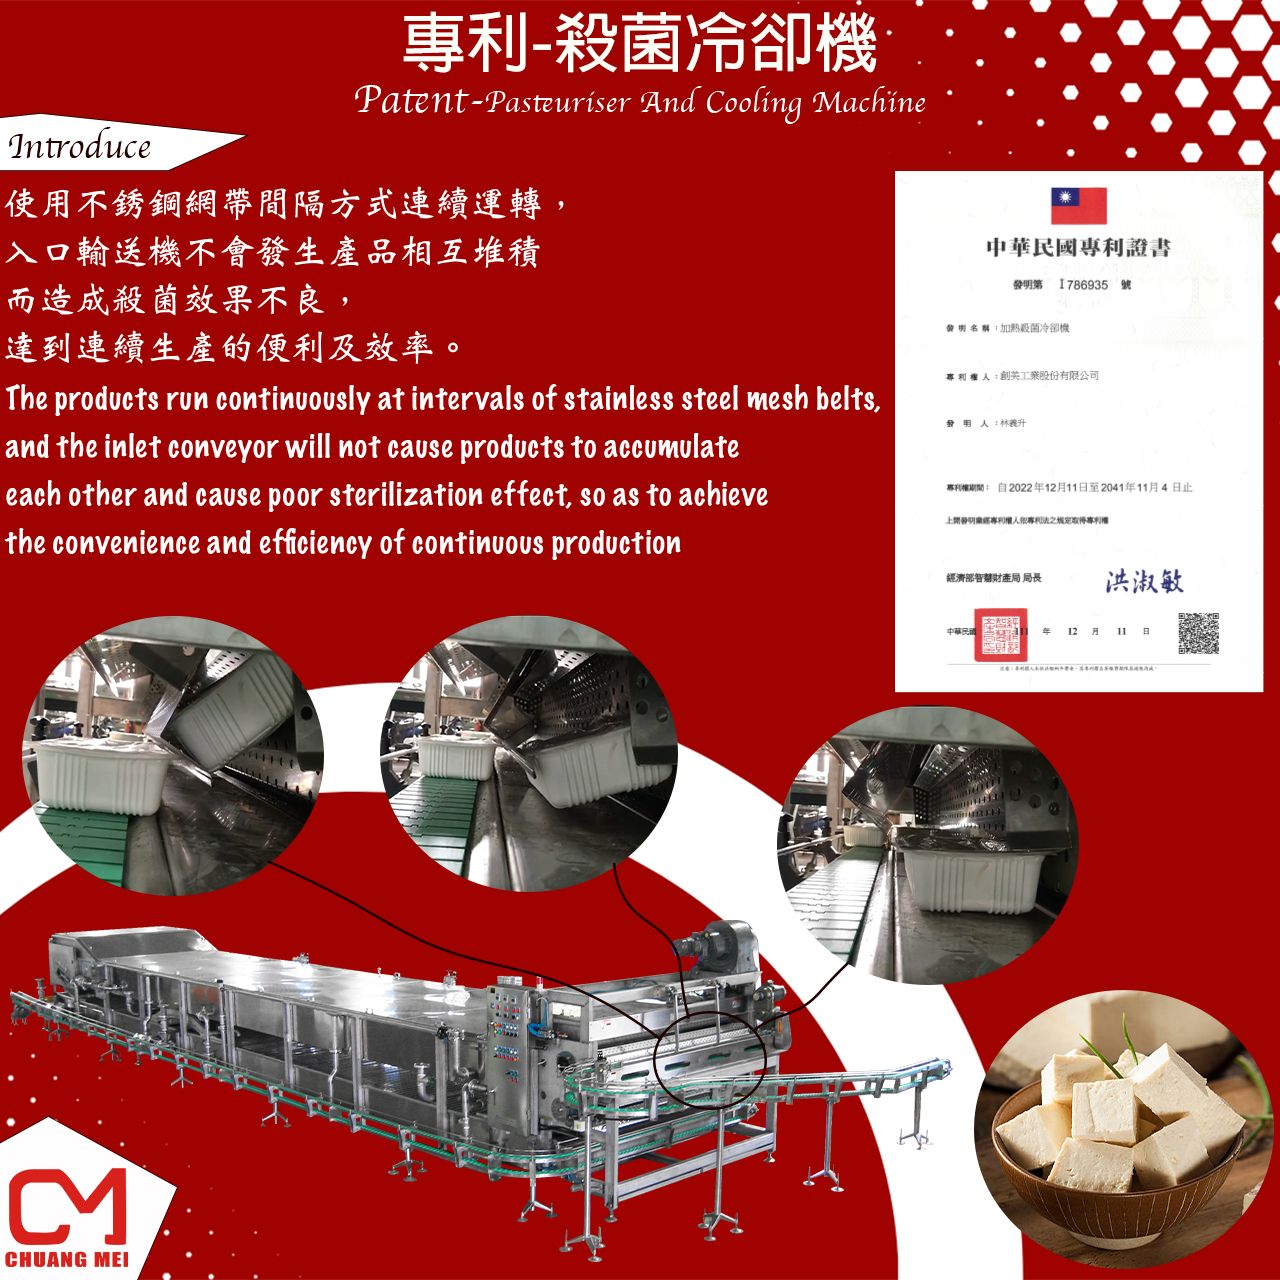 La máquina pasteurizadora y enfriadora diseñada y desarrollada por Chuang Mei.